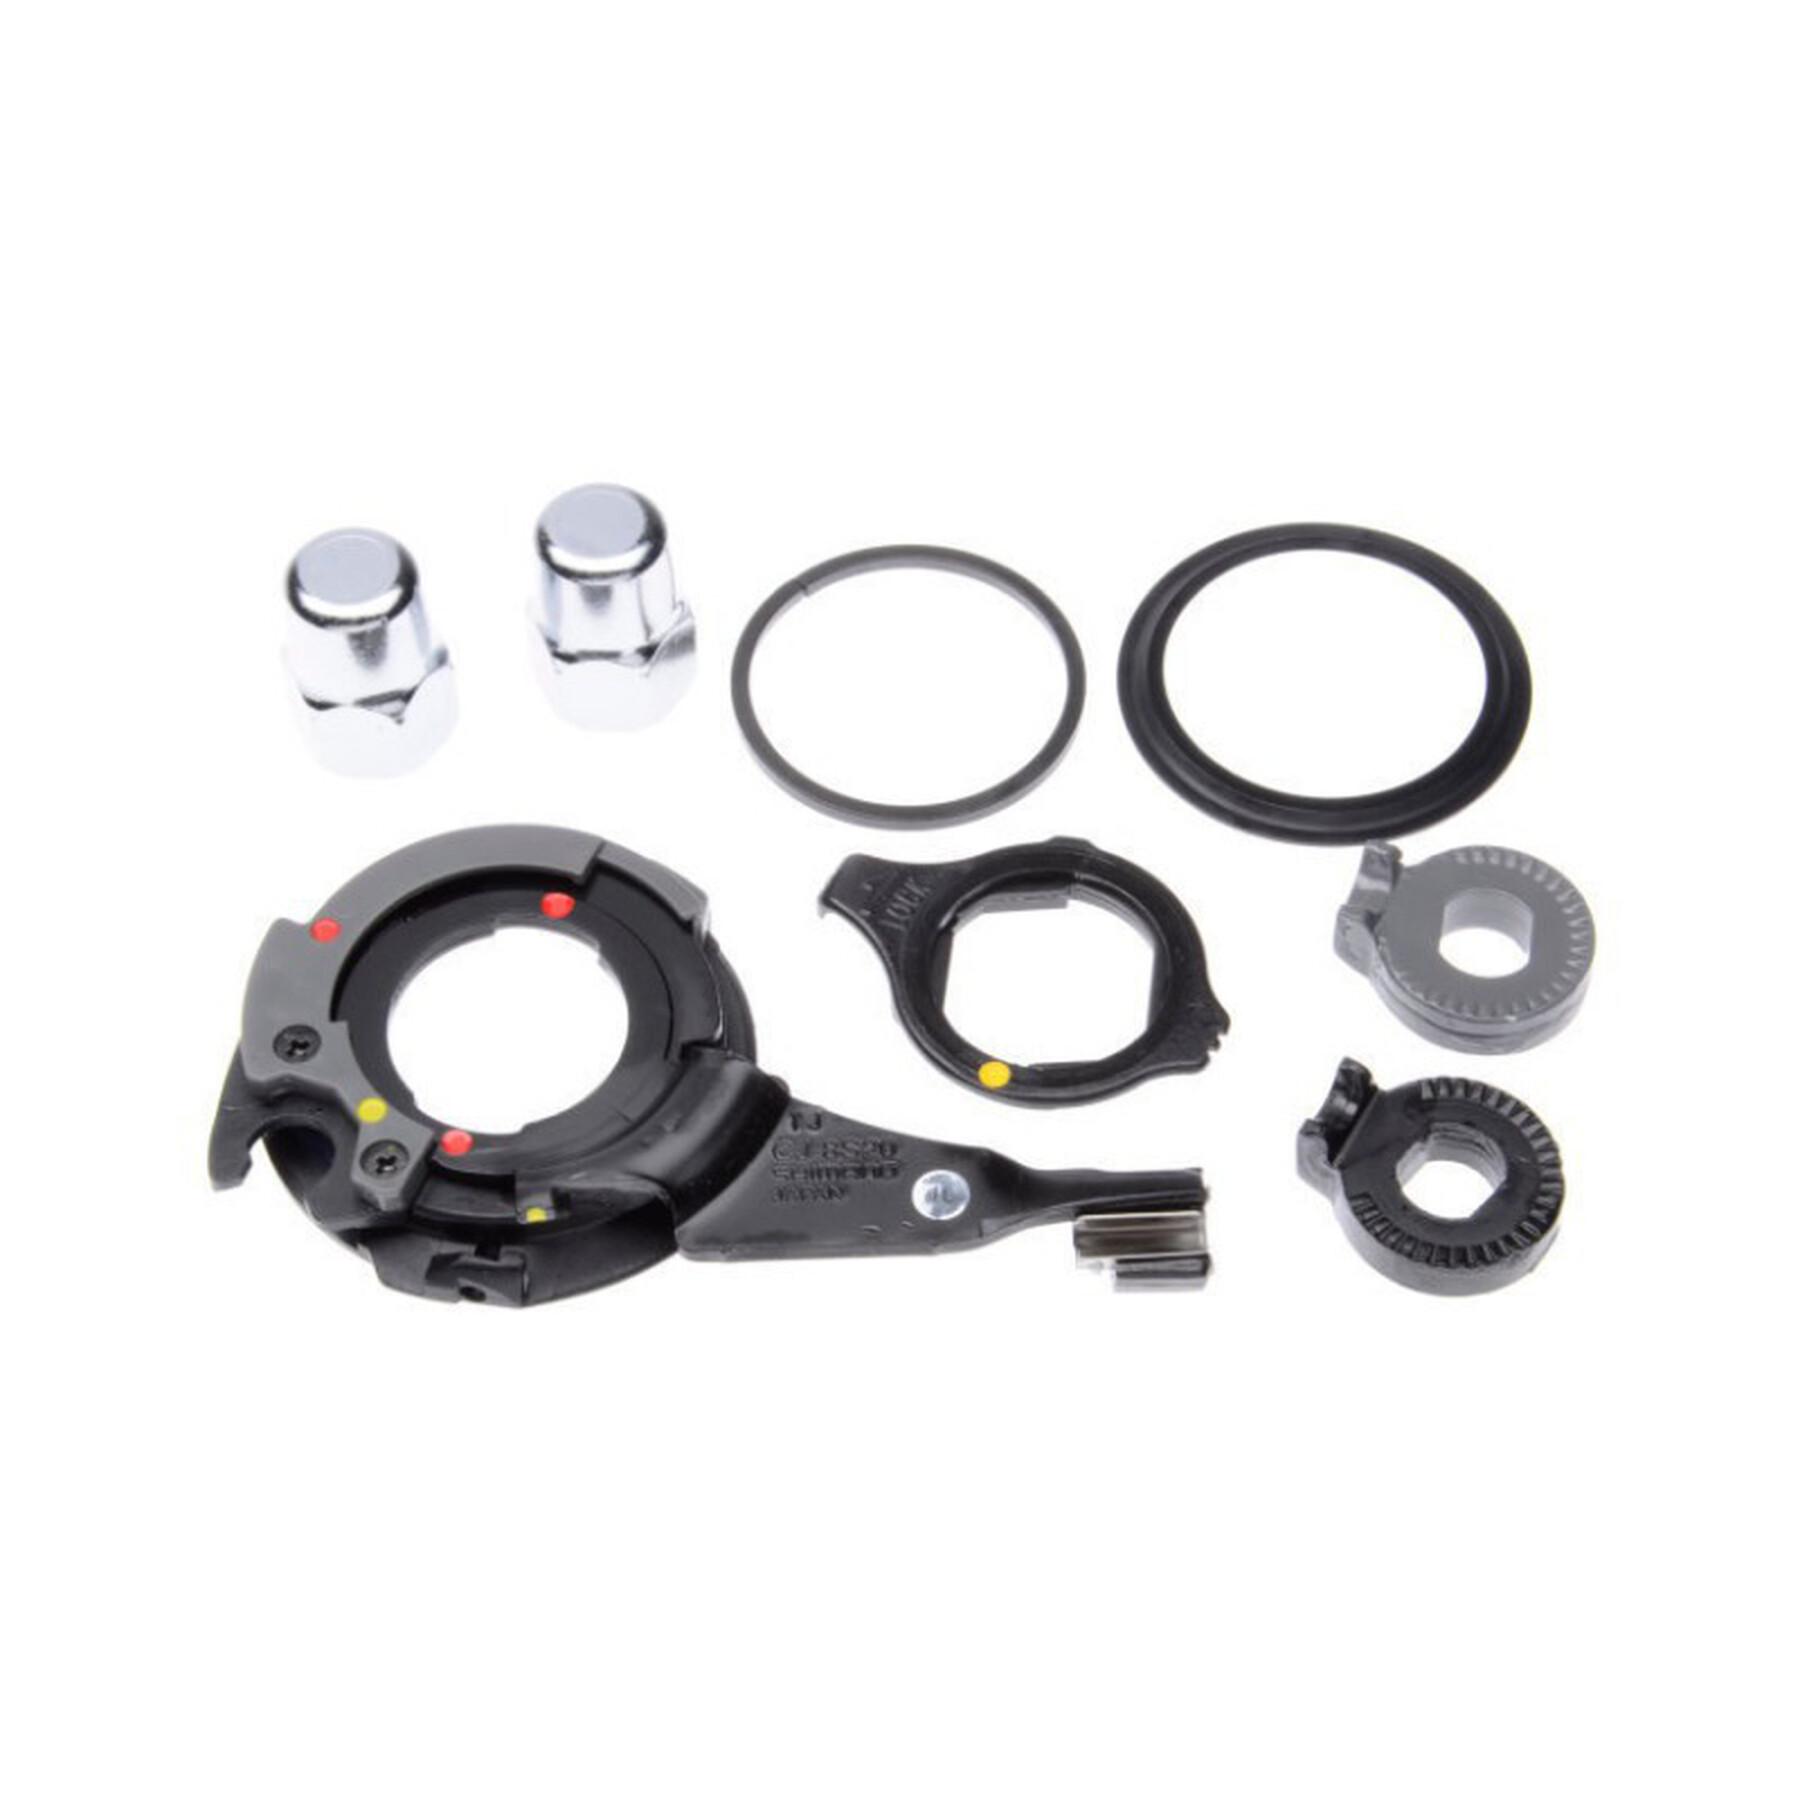 Spare hub kit (screws/washers/gear/circlip included) Shimano nexus sm-8s31 8v